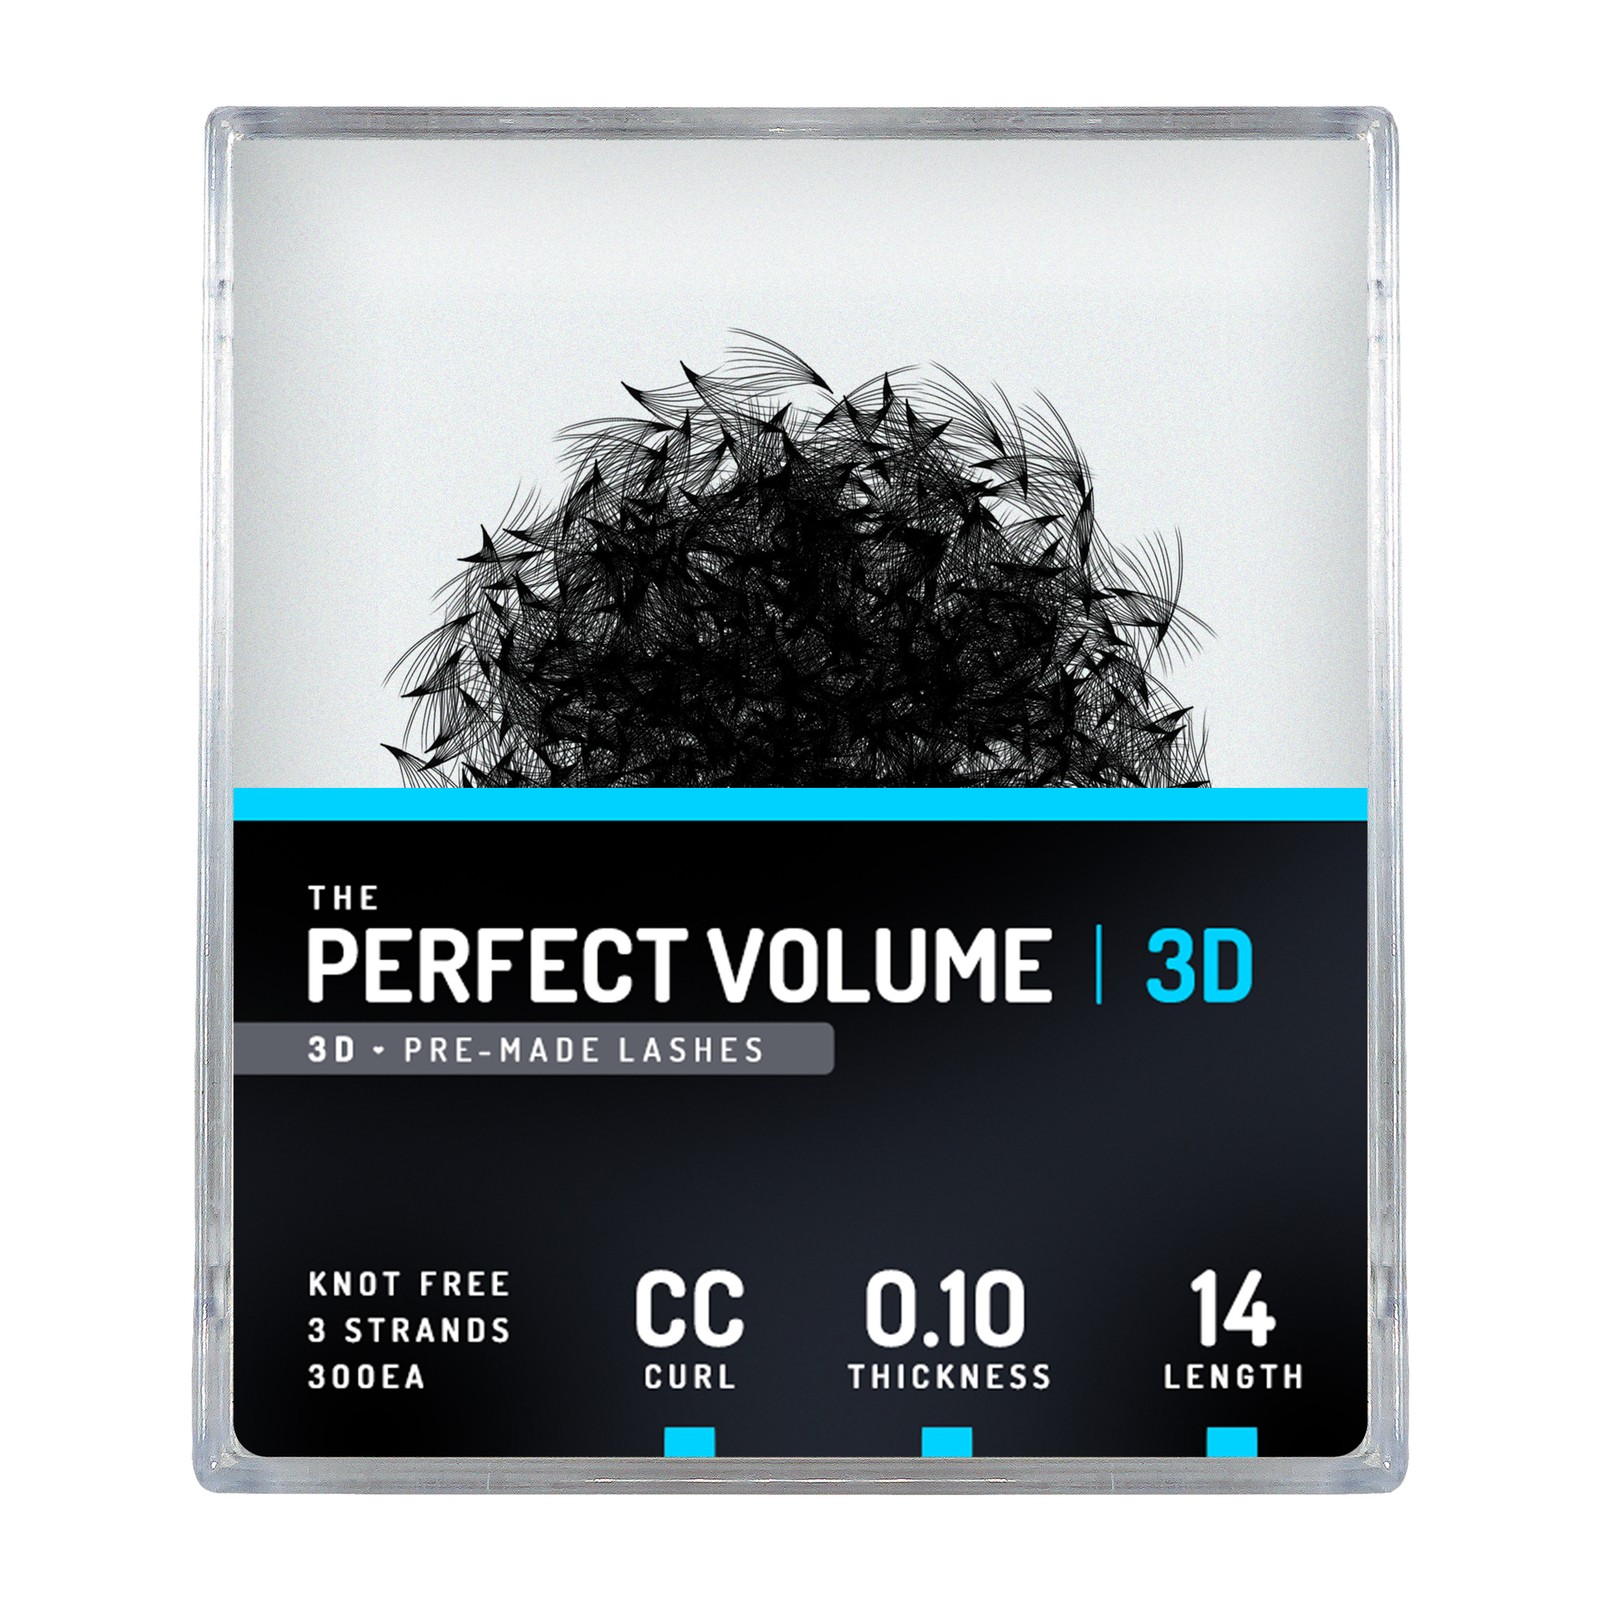 Volume parfait -  300 buchesele premade 3D -  14mm, CC, 0.10mm